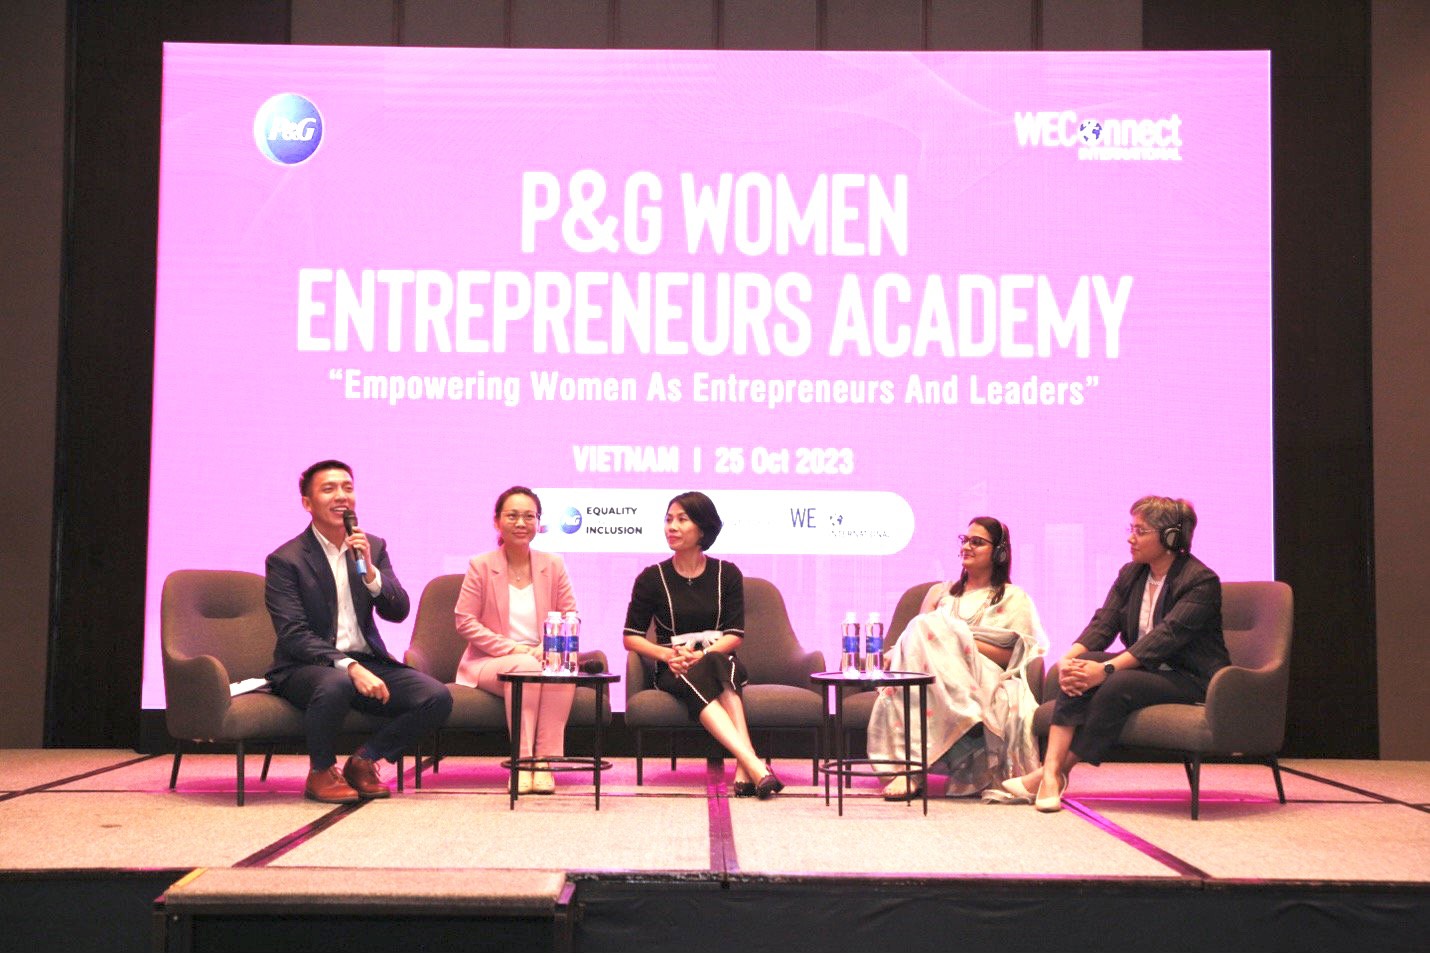 Công ty P&G phát động sáng kiến đào tạo cho cộng đồng doanh nhân nữ